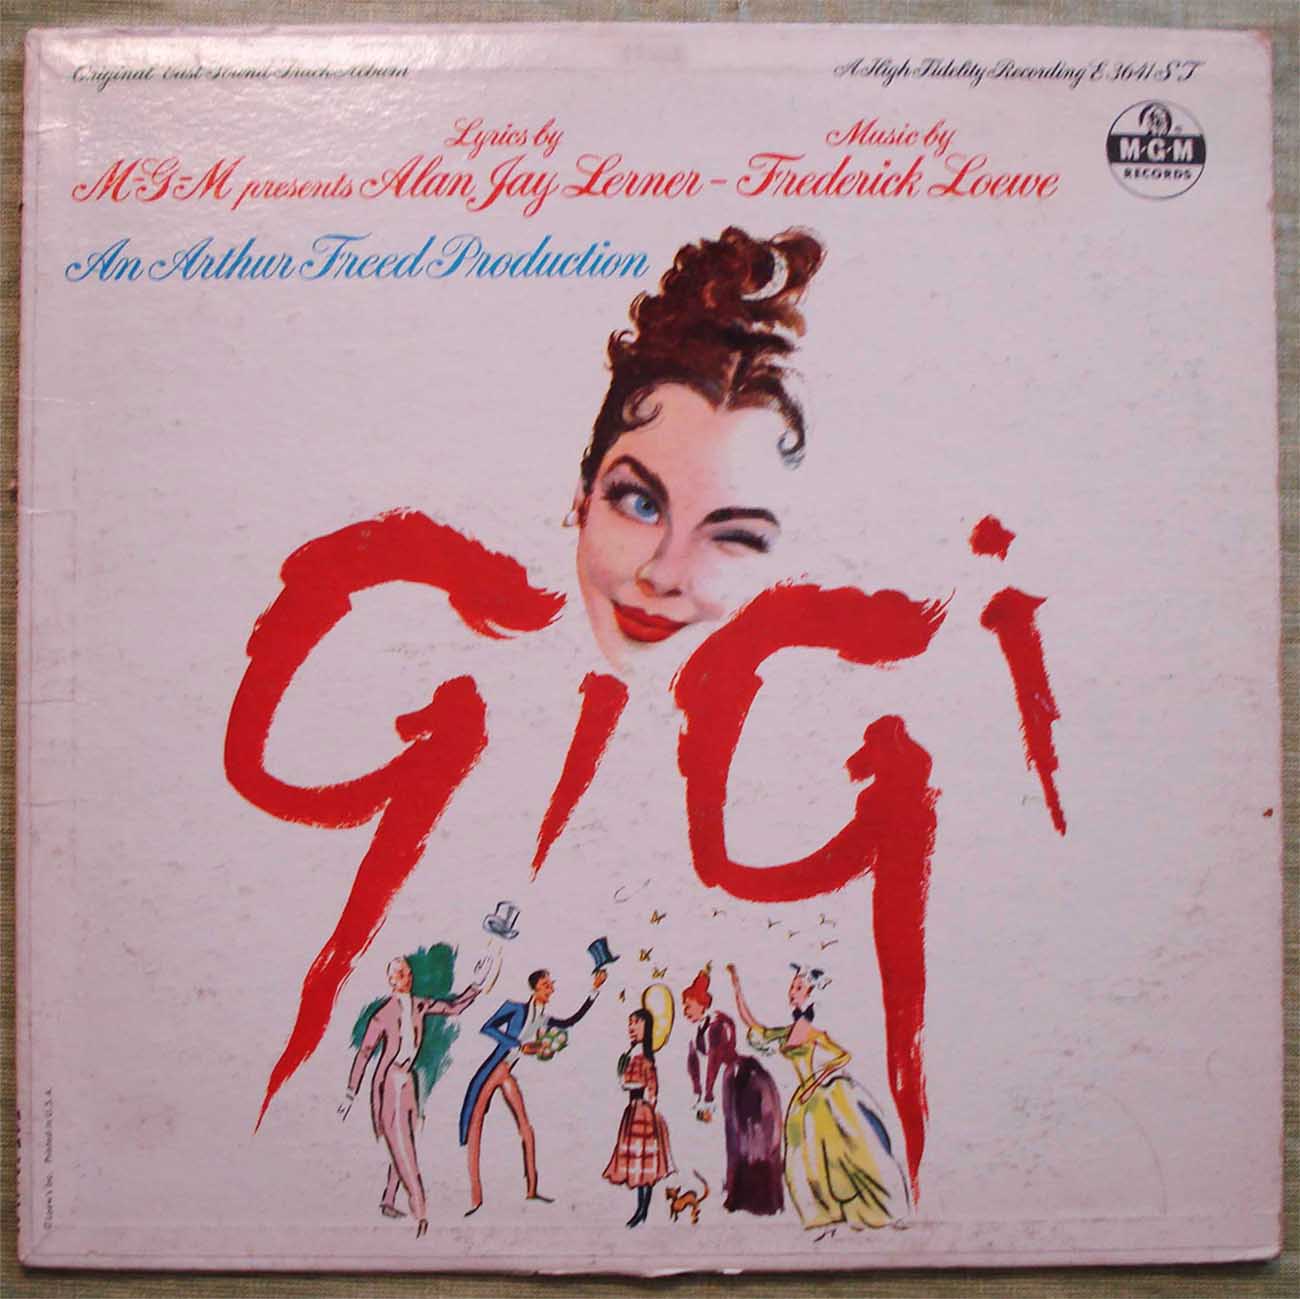 Gigi Original Cast Sound Track Album (1959) Vinyl LP 33rpm E3641ST